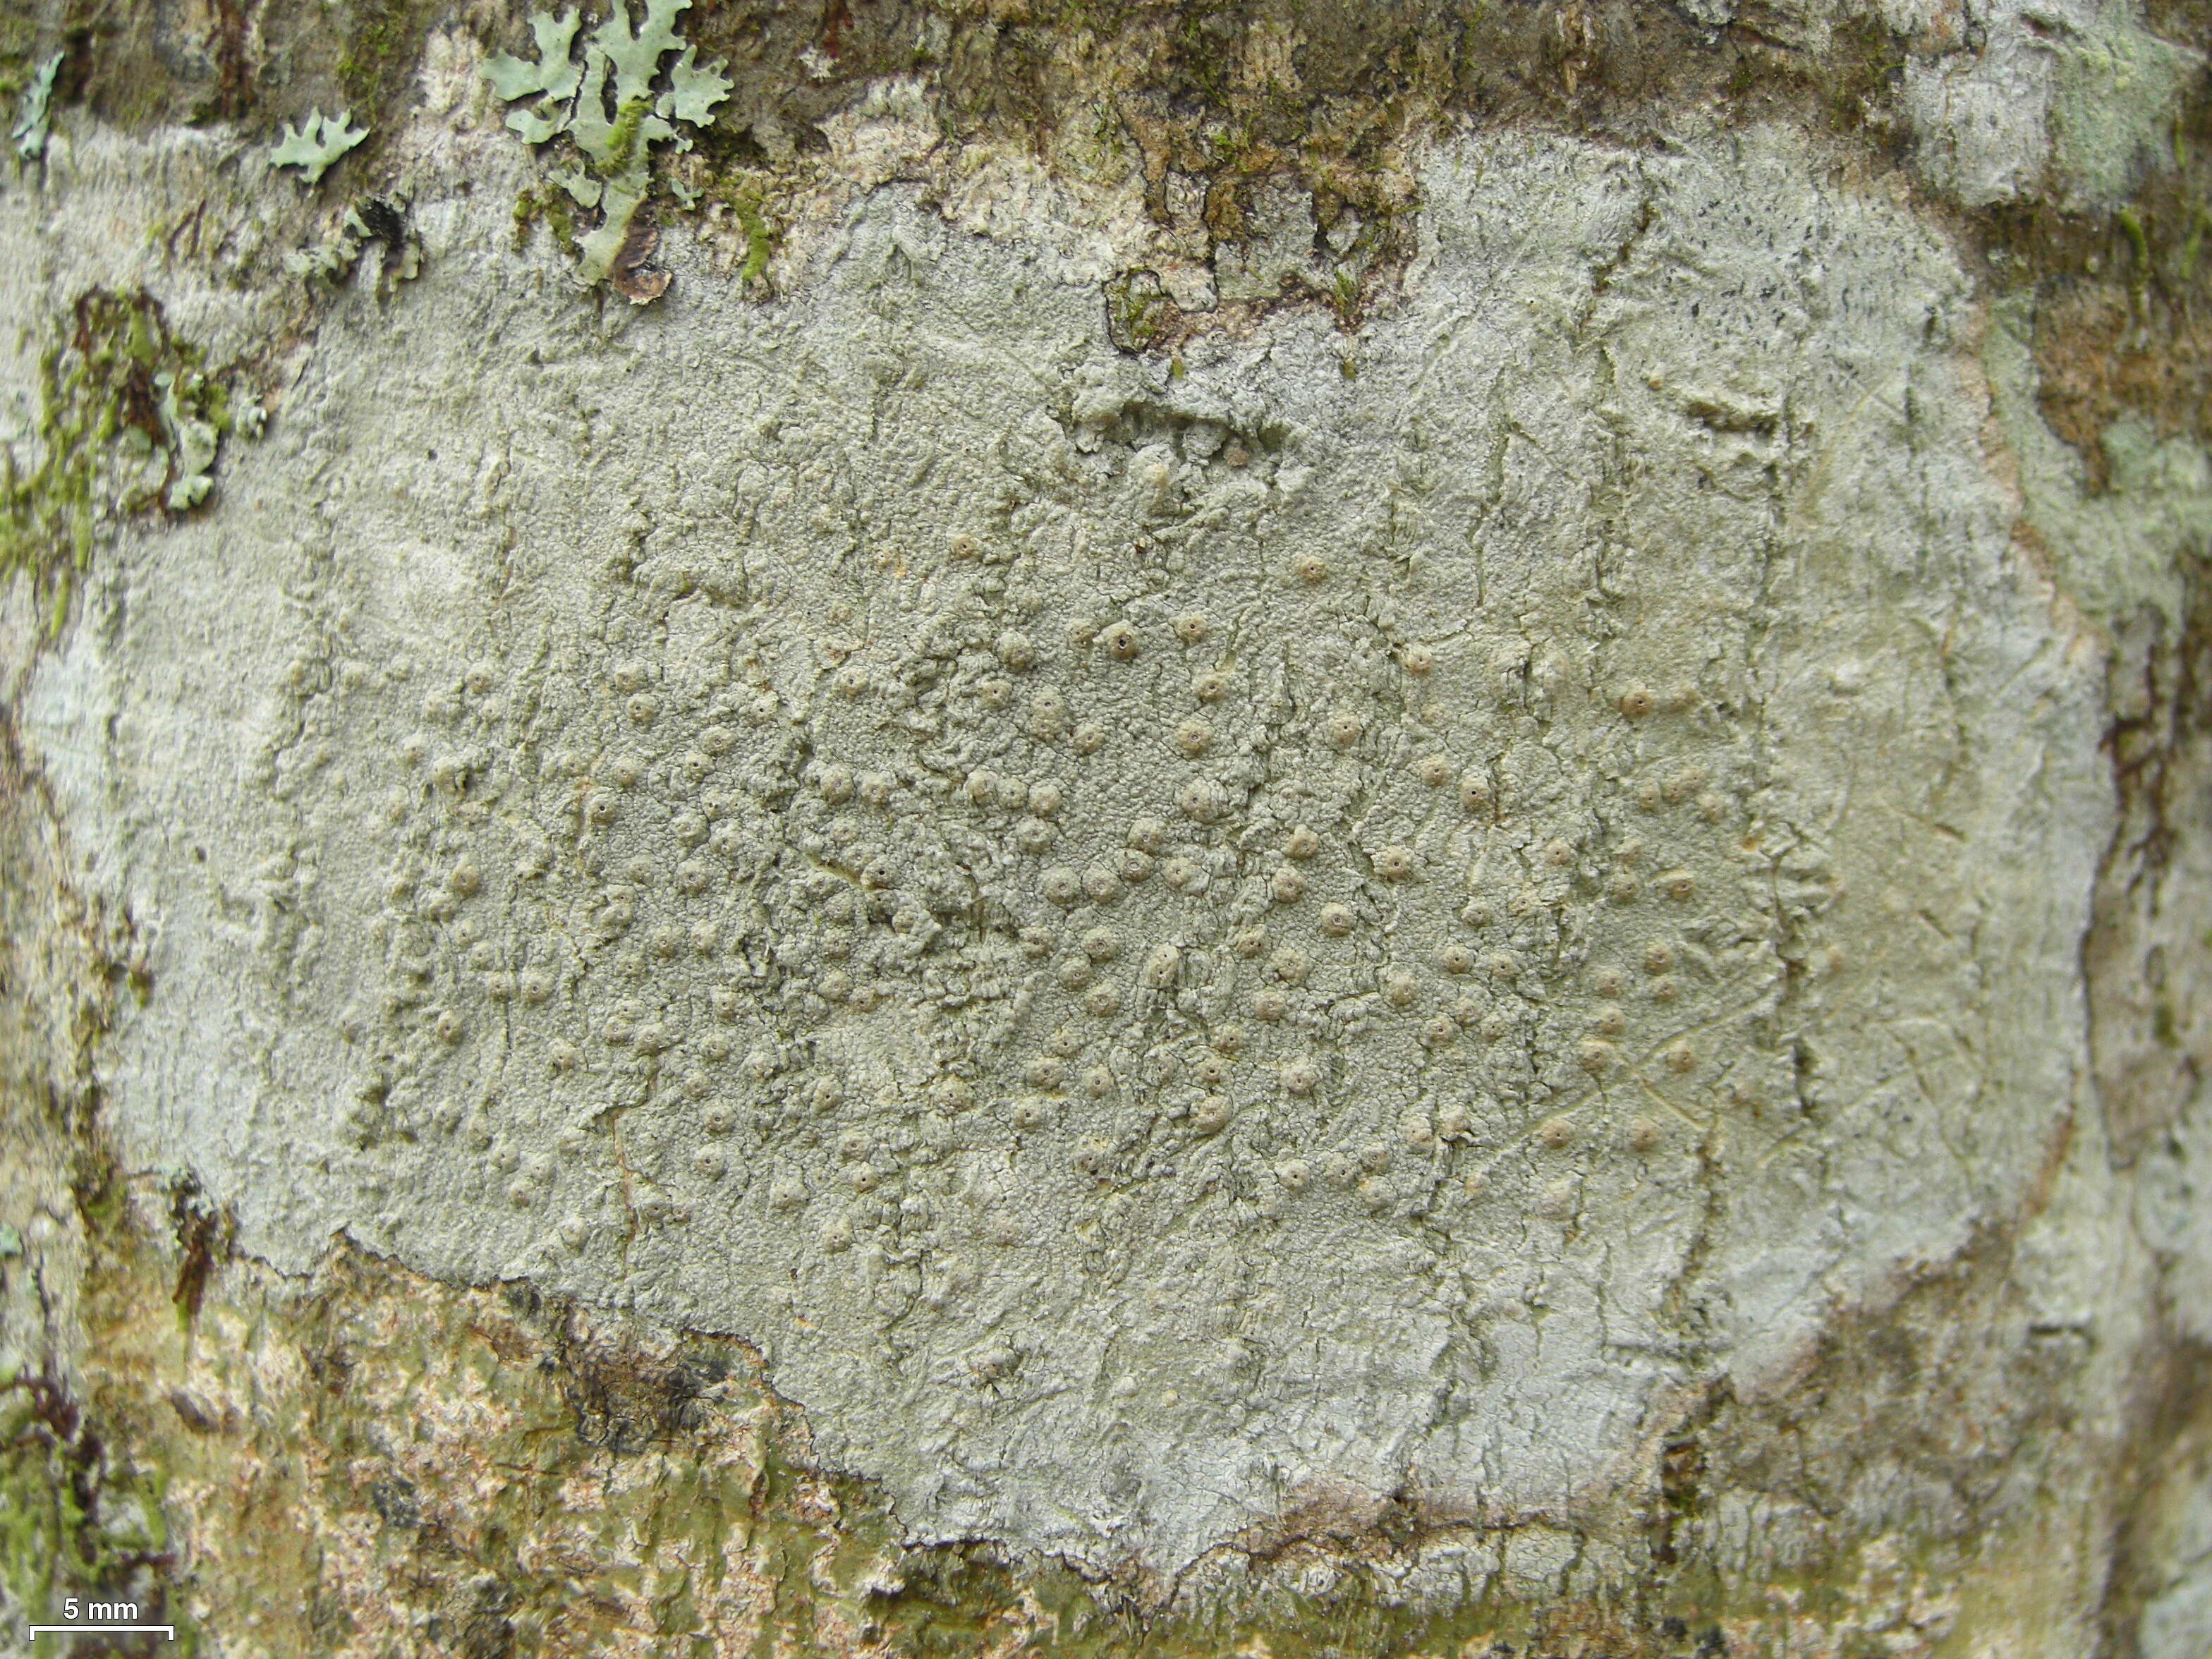 Image of ocellularia lichen